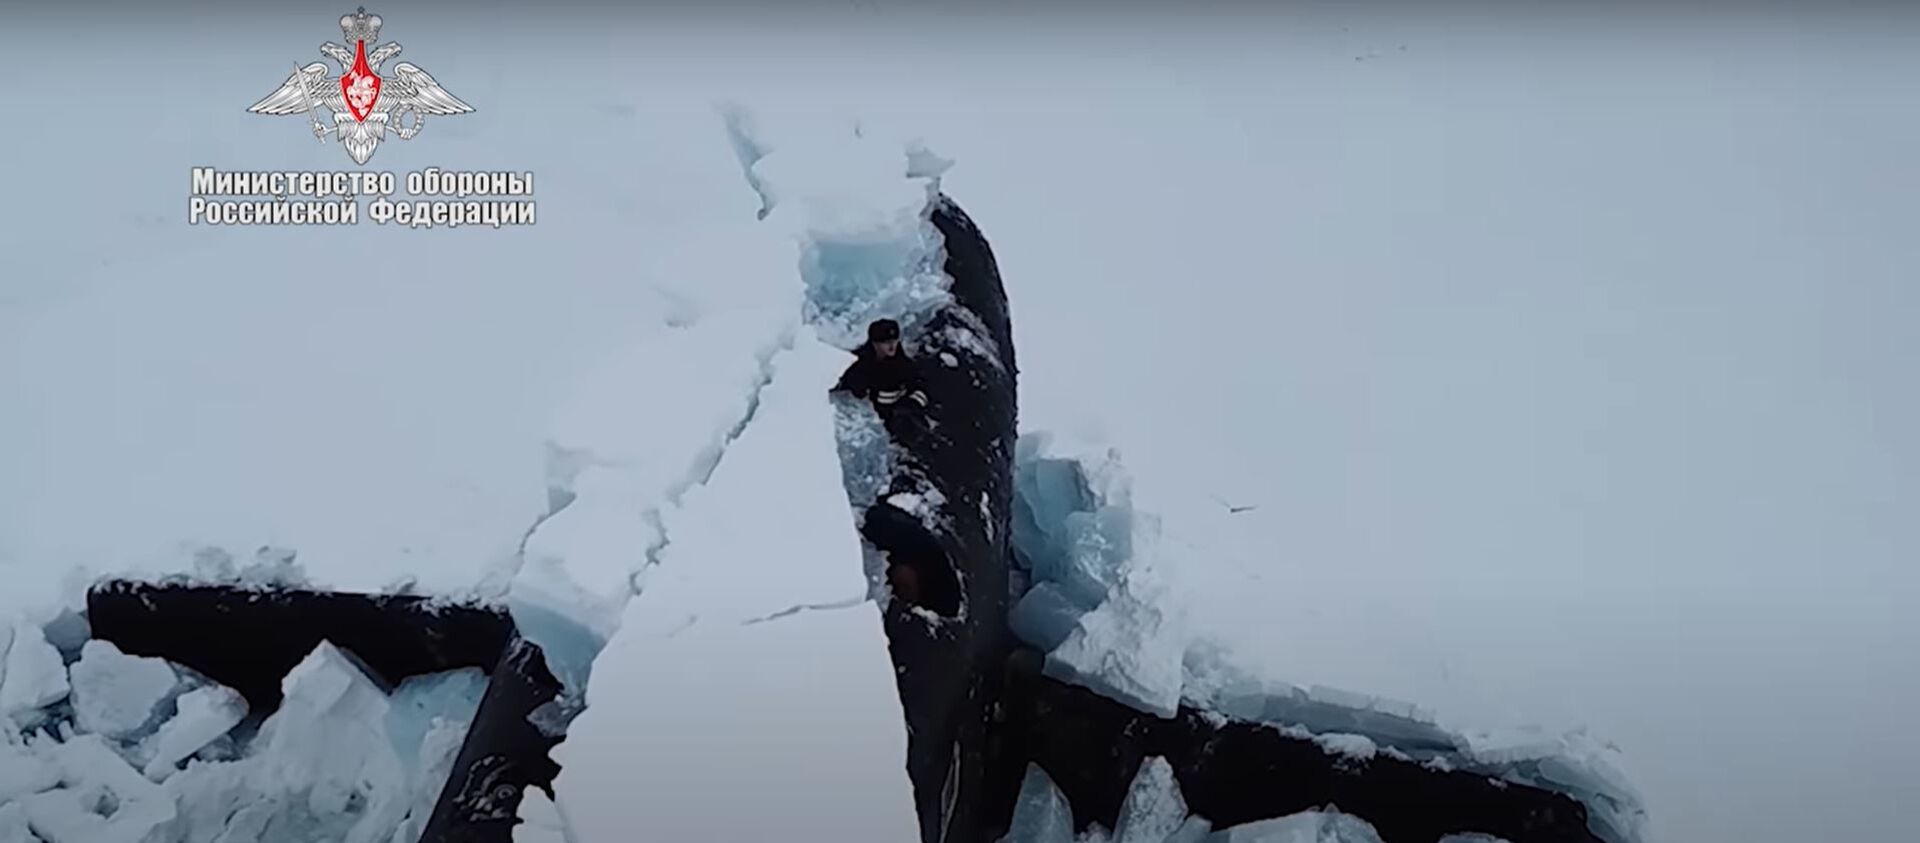 Первое в истории синхронное всплытие трех атомных подлодок ВМФ РФ из-под толщи льда сняли на видео - Sputnik Latvija, 1920, 28.03.2021